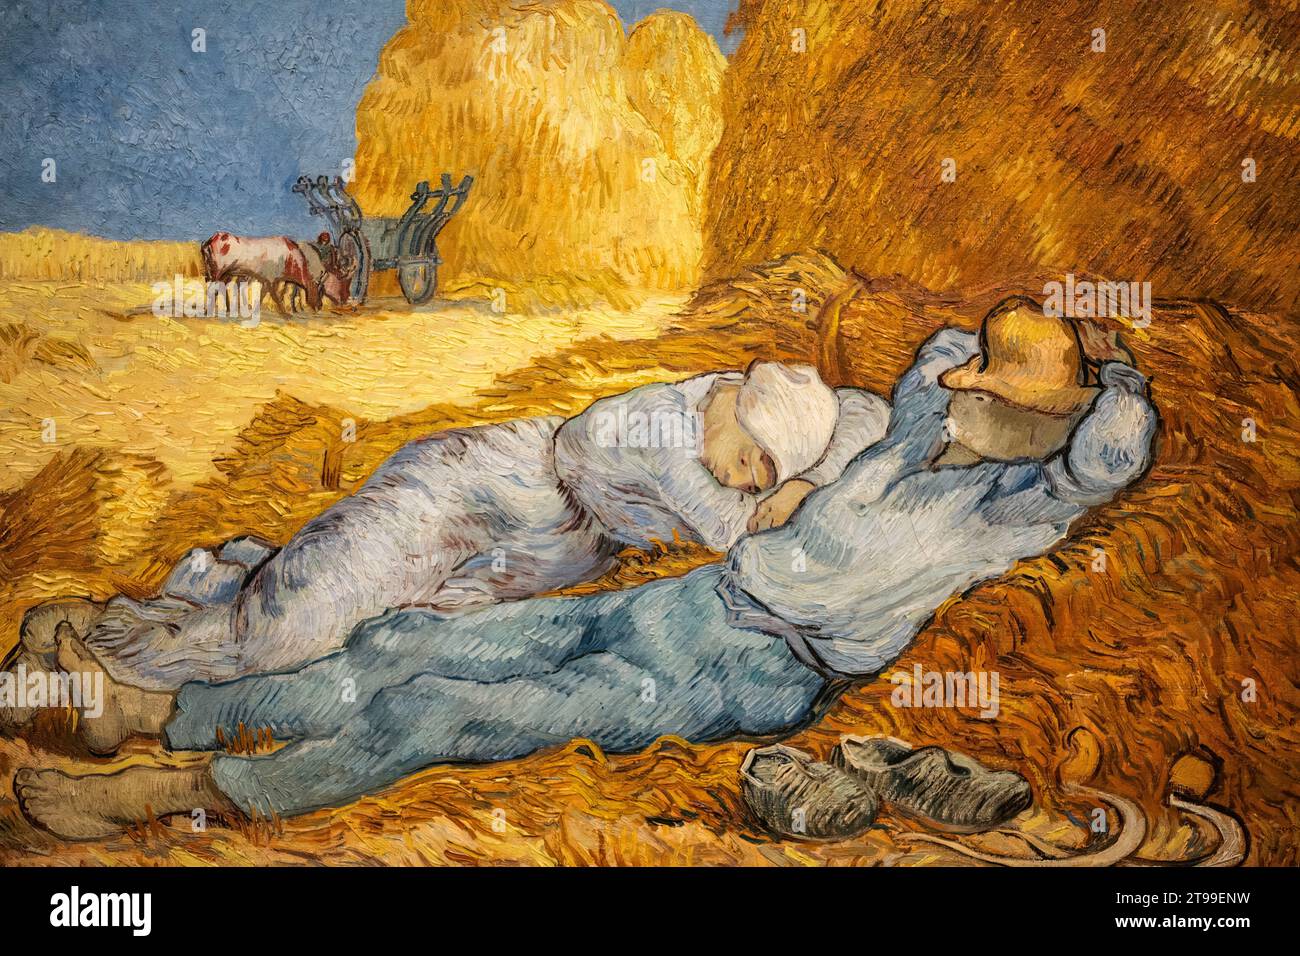 Détail de la peinture de Van Gogh au Musée d'Orsay, Paris, France. Banque D'Images